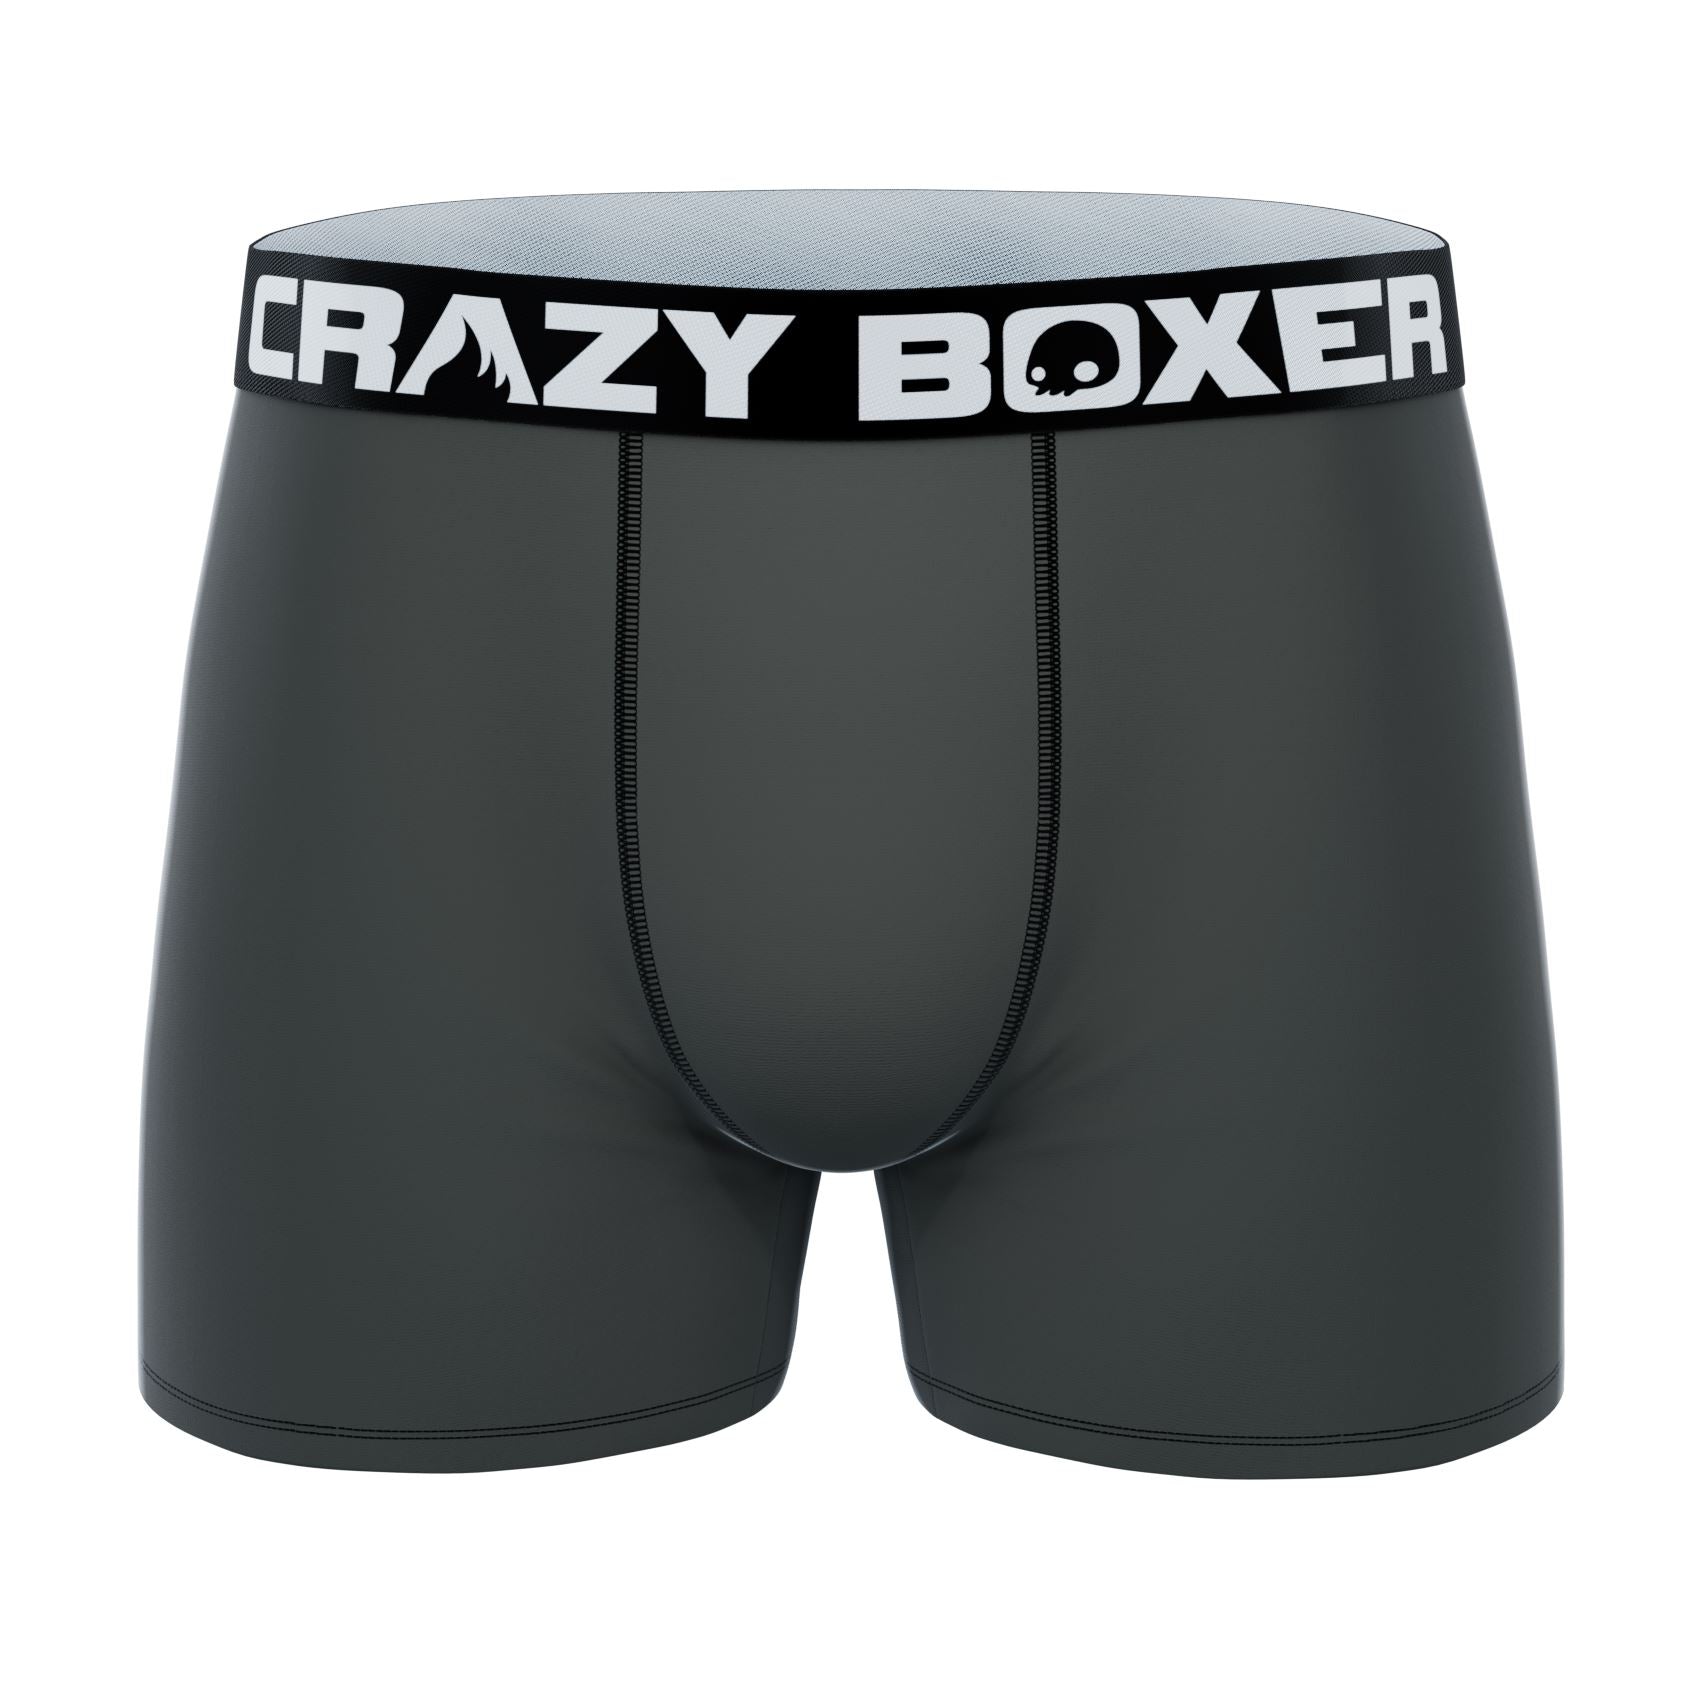 CRAZYBOXER Men's Underwear Star Wars Comfortable Soft Boxer Brief  Lightweight 